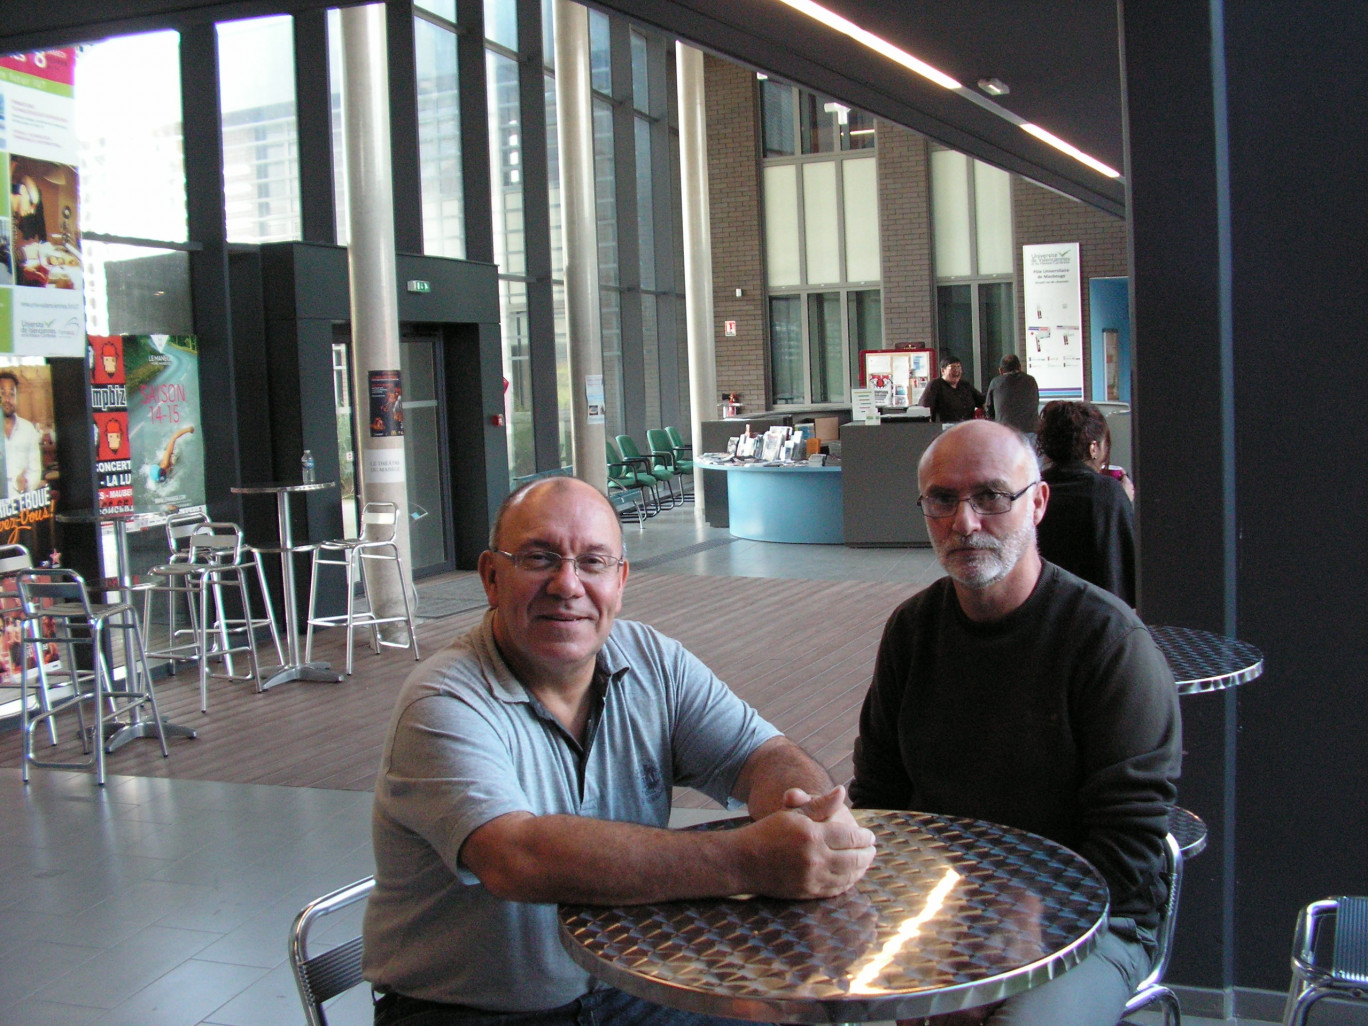 Dans le hall d’accueil du nouveau site. Robert Crocfer, responsable administratif du site (à gauche), en compagnie de Rémi Assier, technicien à l’IUT informatique.